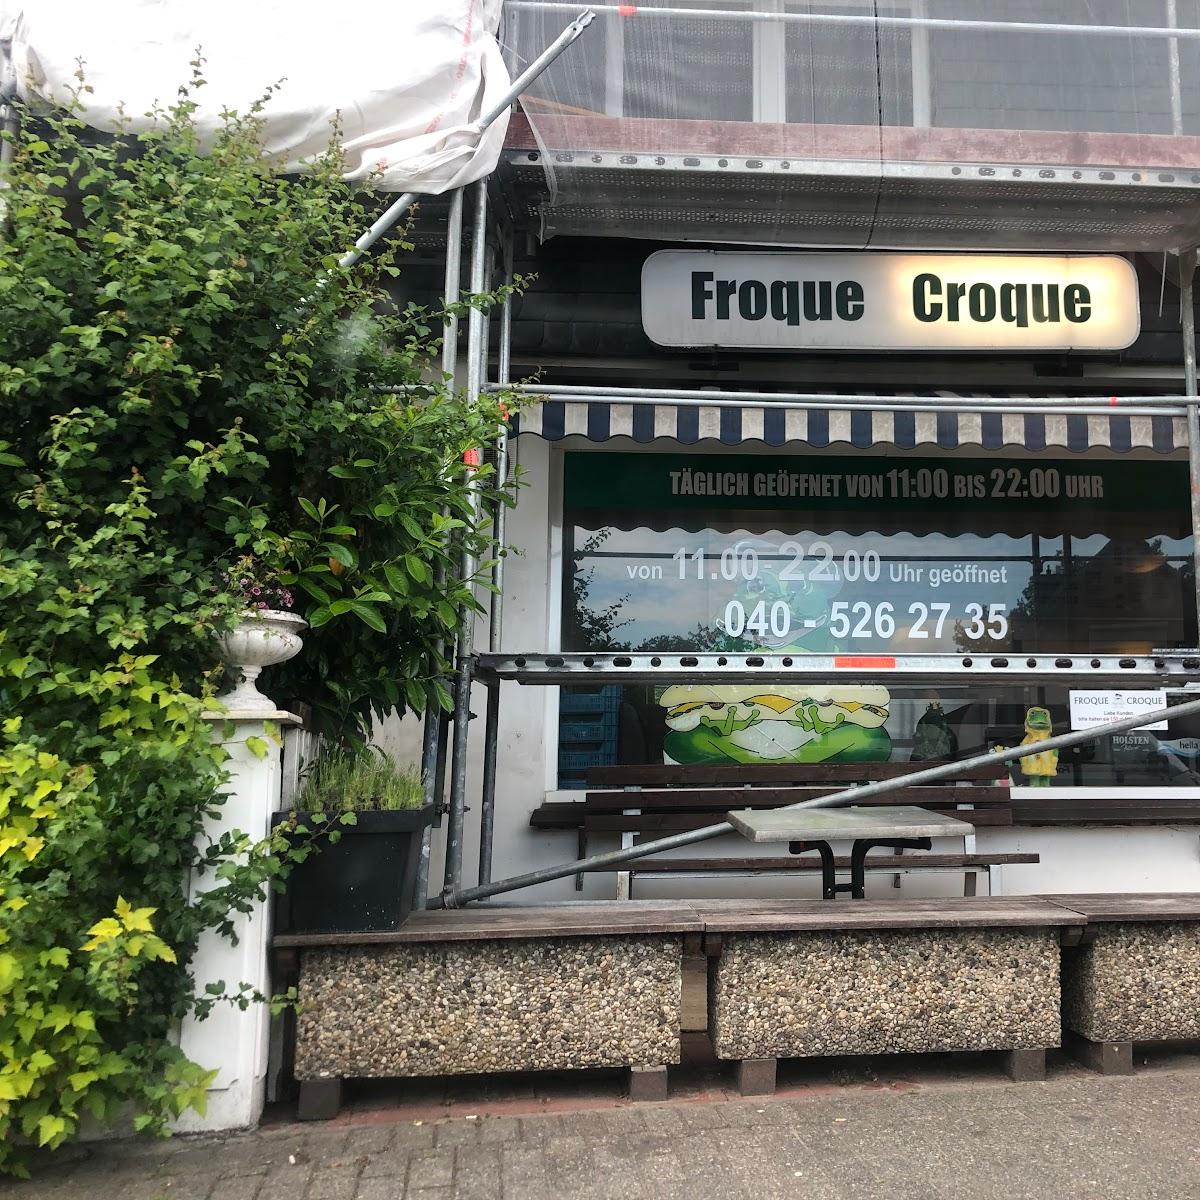 Restaurant "Froque Croque" in Norderstedt